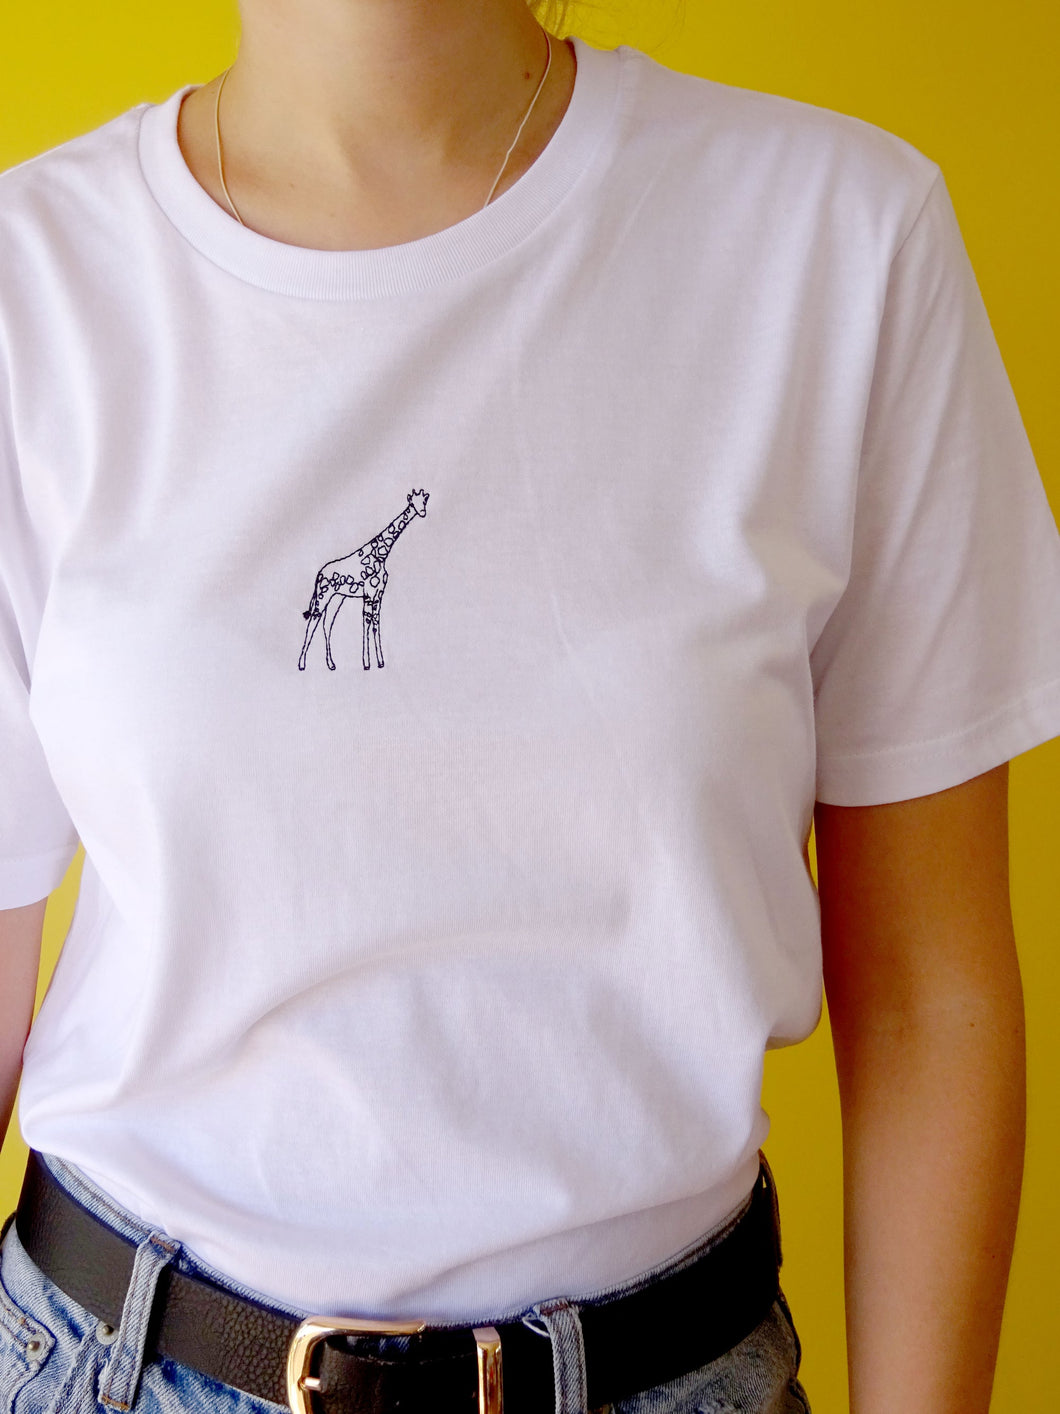 Single giraffe t-shirt